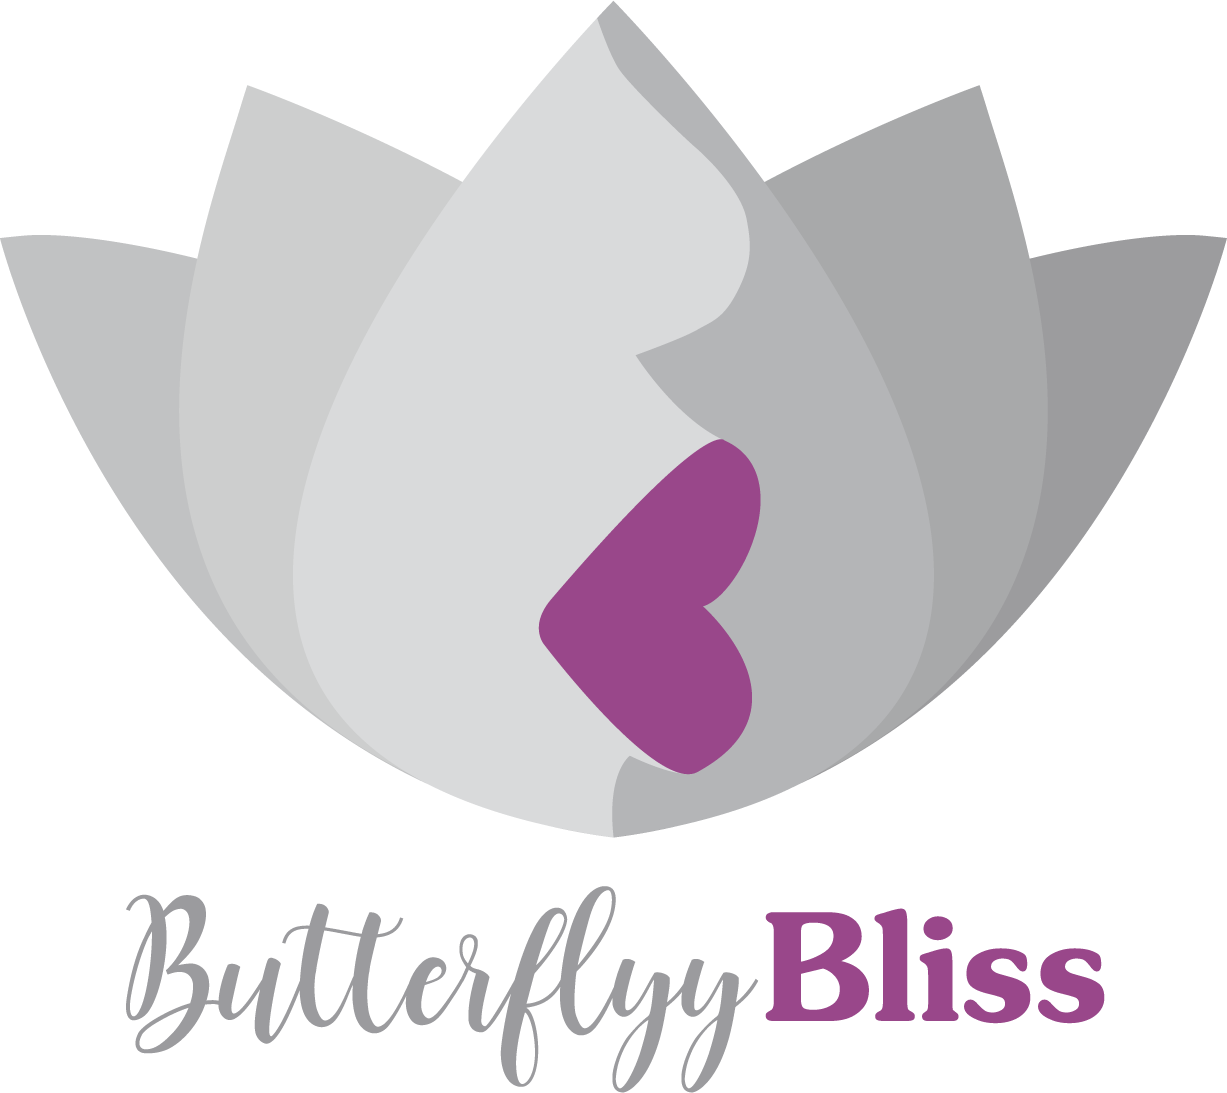 Meet the Vendor: Butterfly Bliss